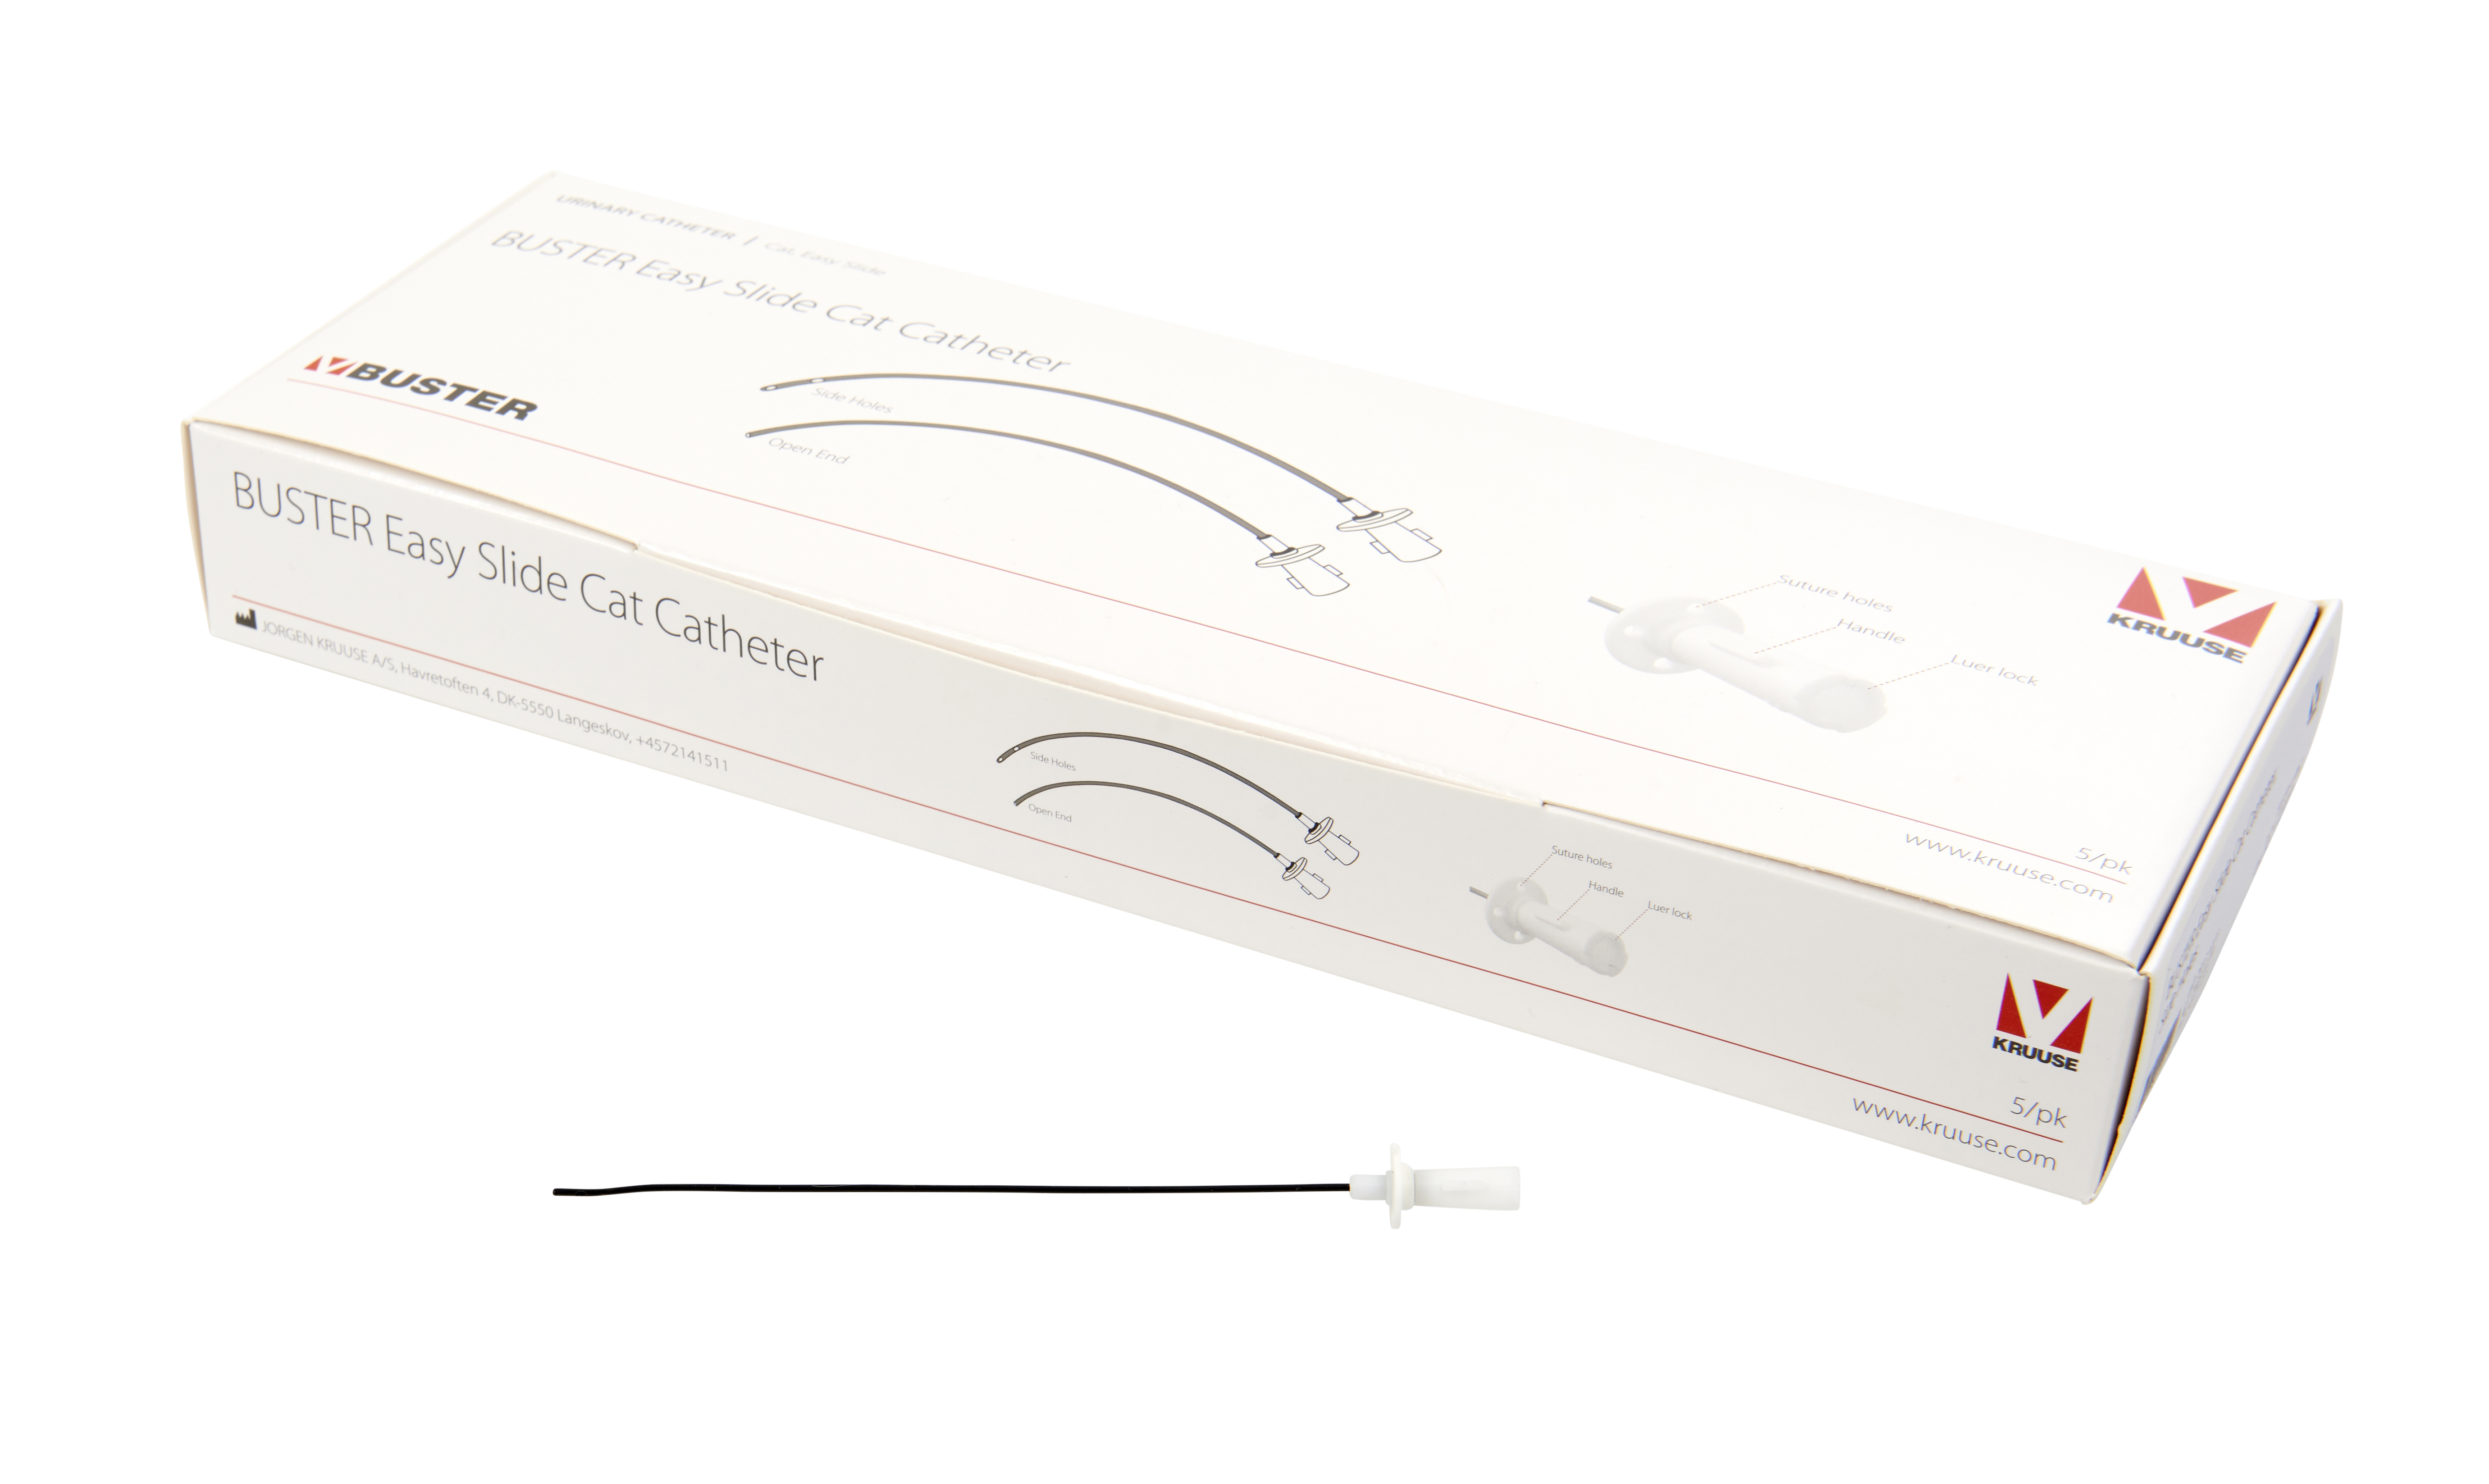 BUSTER Easy Slide Cat Catheter, 1,2 x 140 mm/3.5 Fr x 5½, side holes, 5/pk